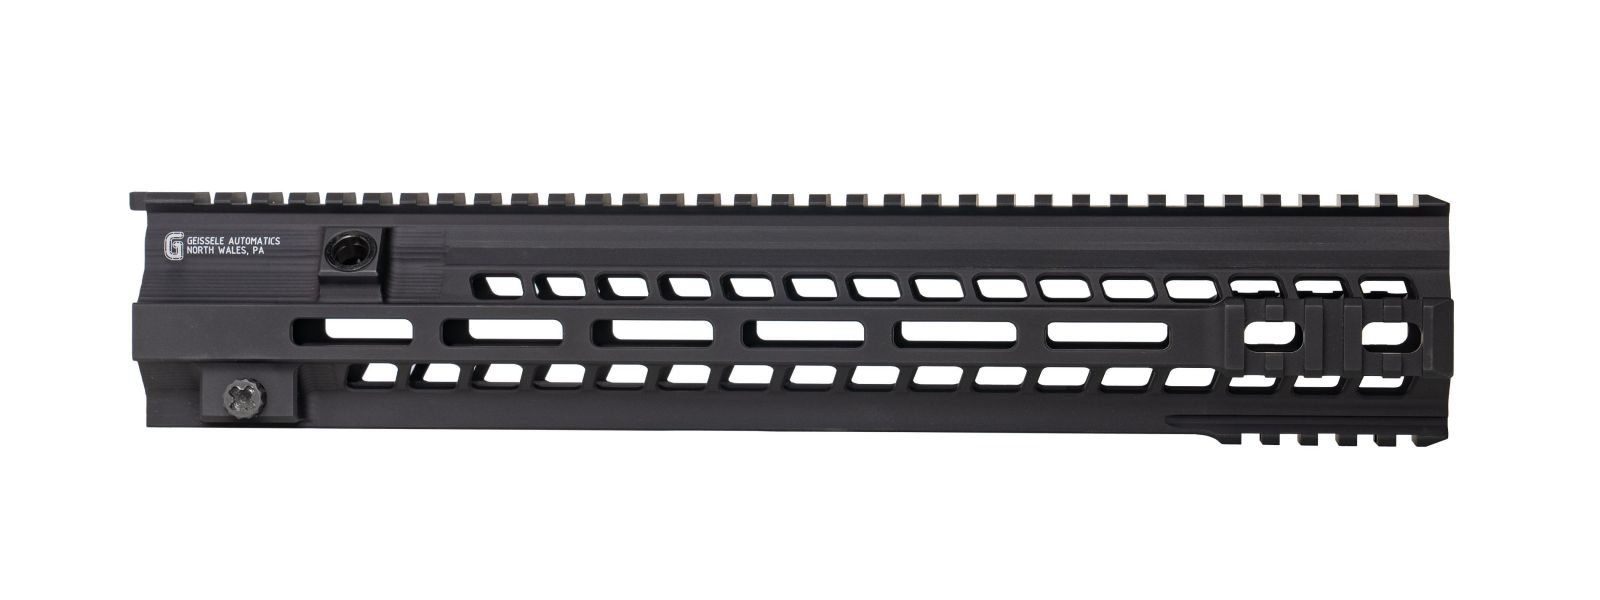 Geissele předpažbí Super Modular Rail M-LOK MK15 pro HK416 - 14.5, černé